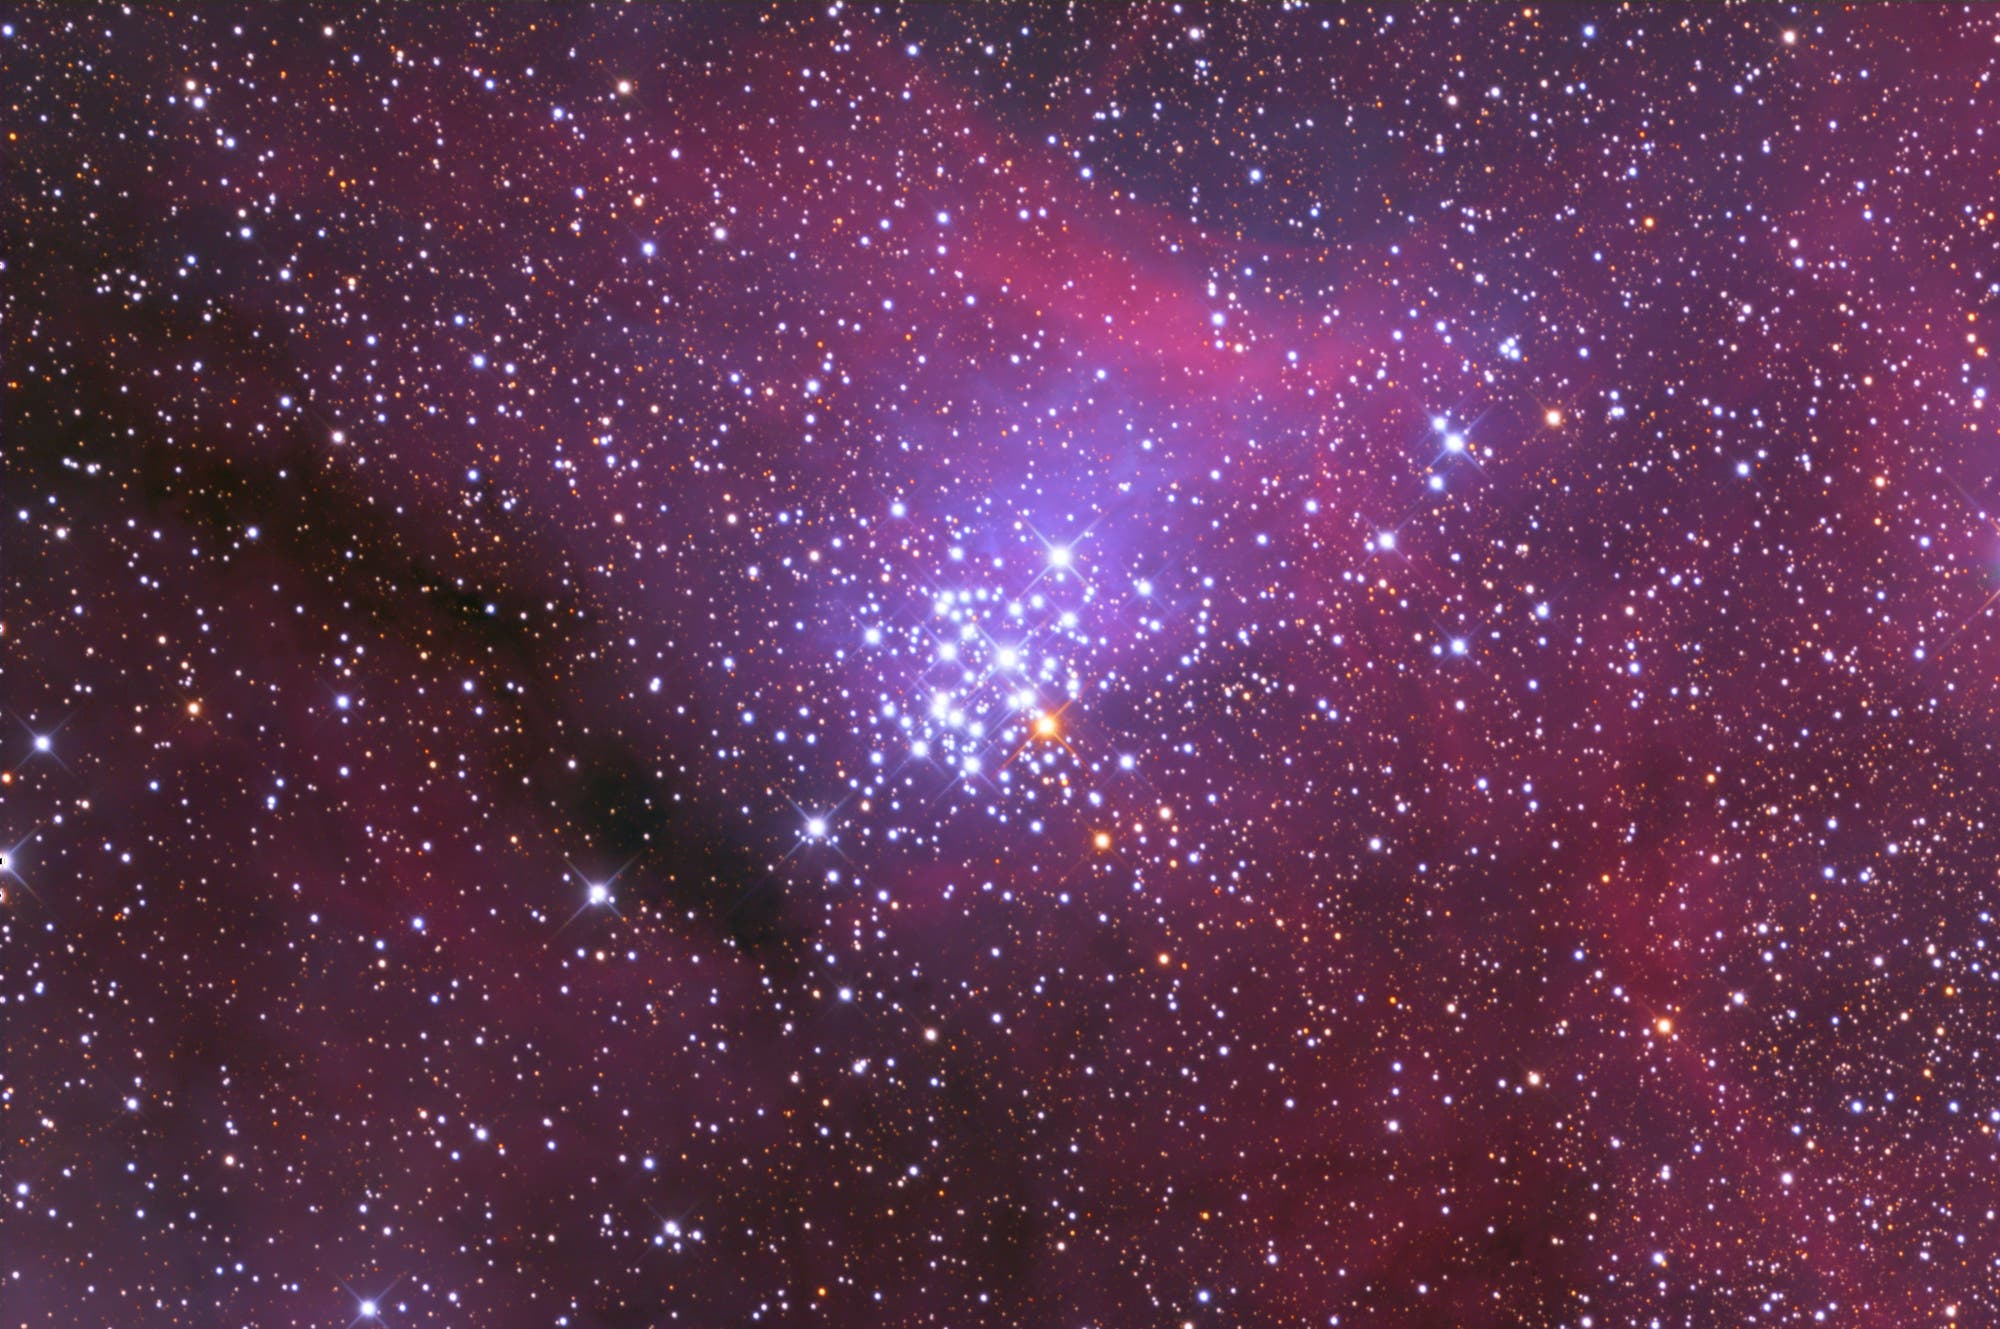 NGC 3293 - ein offener Sternhaufen in farbenfroher Umgebung